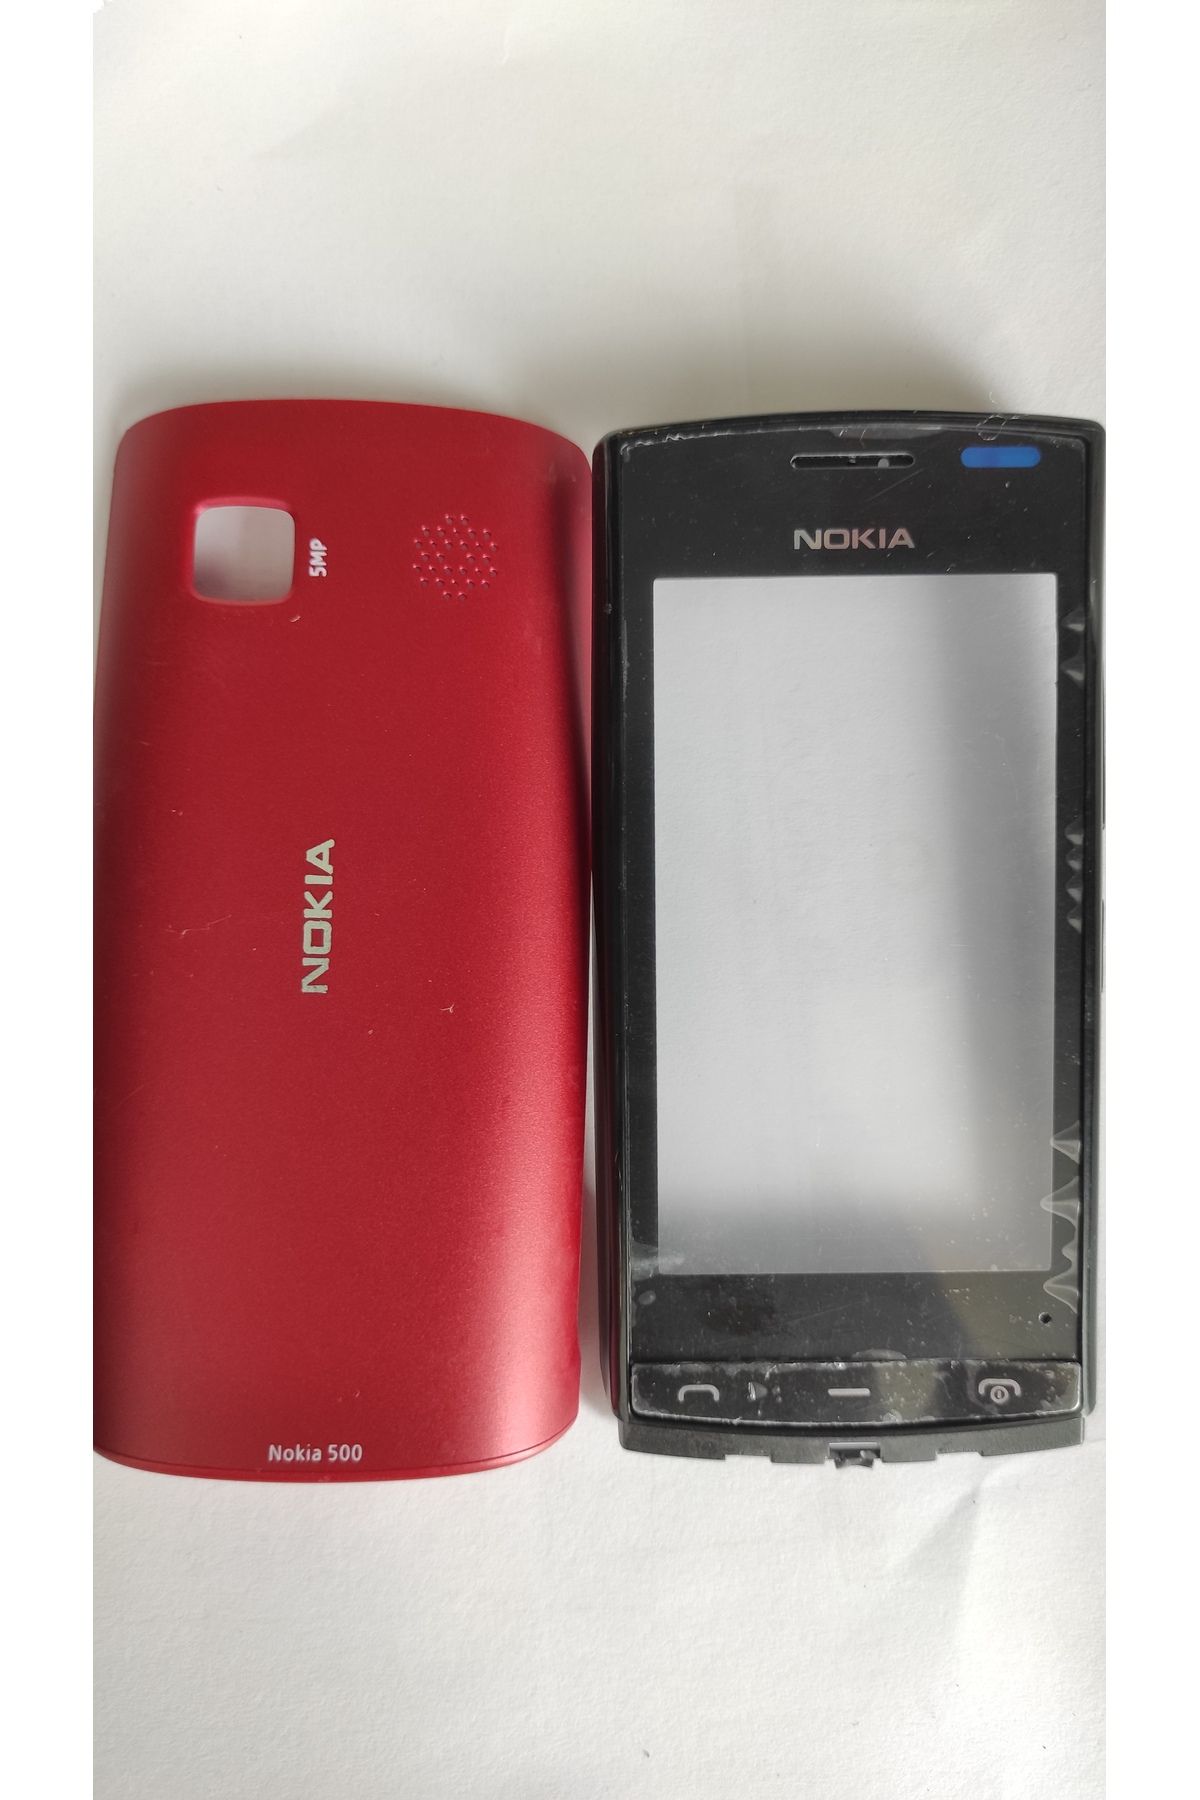 Nokia NOKİA N500 TUŞ TAKIMI VE KAPAK